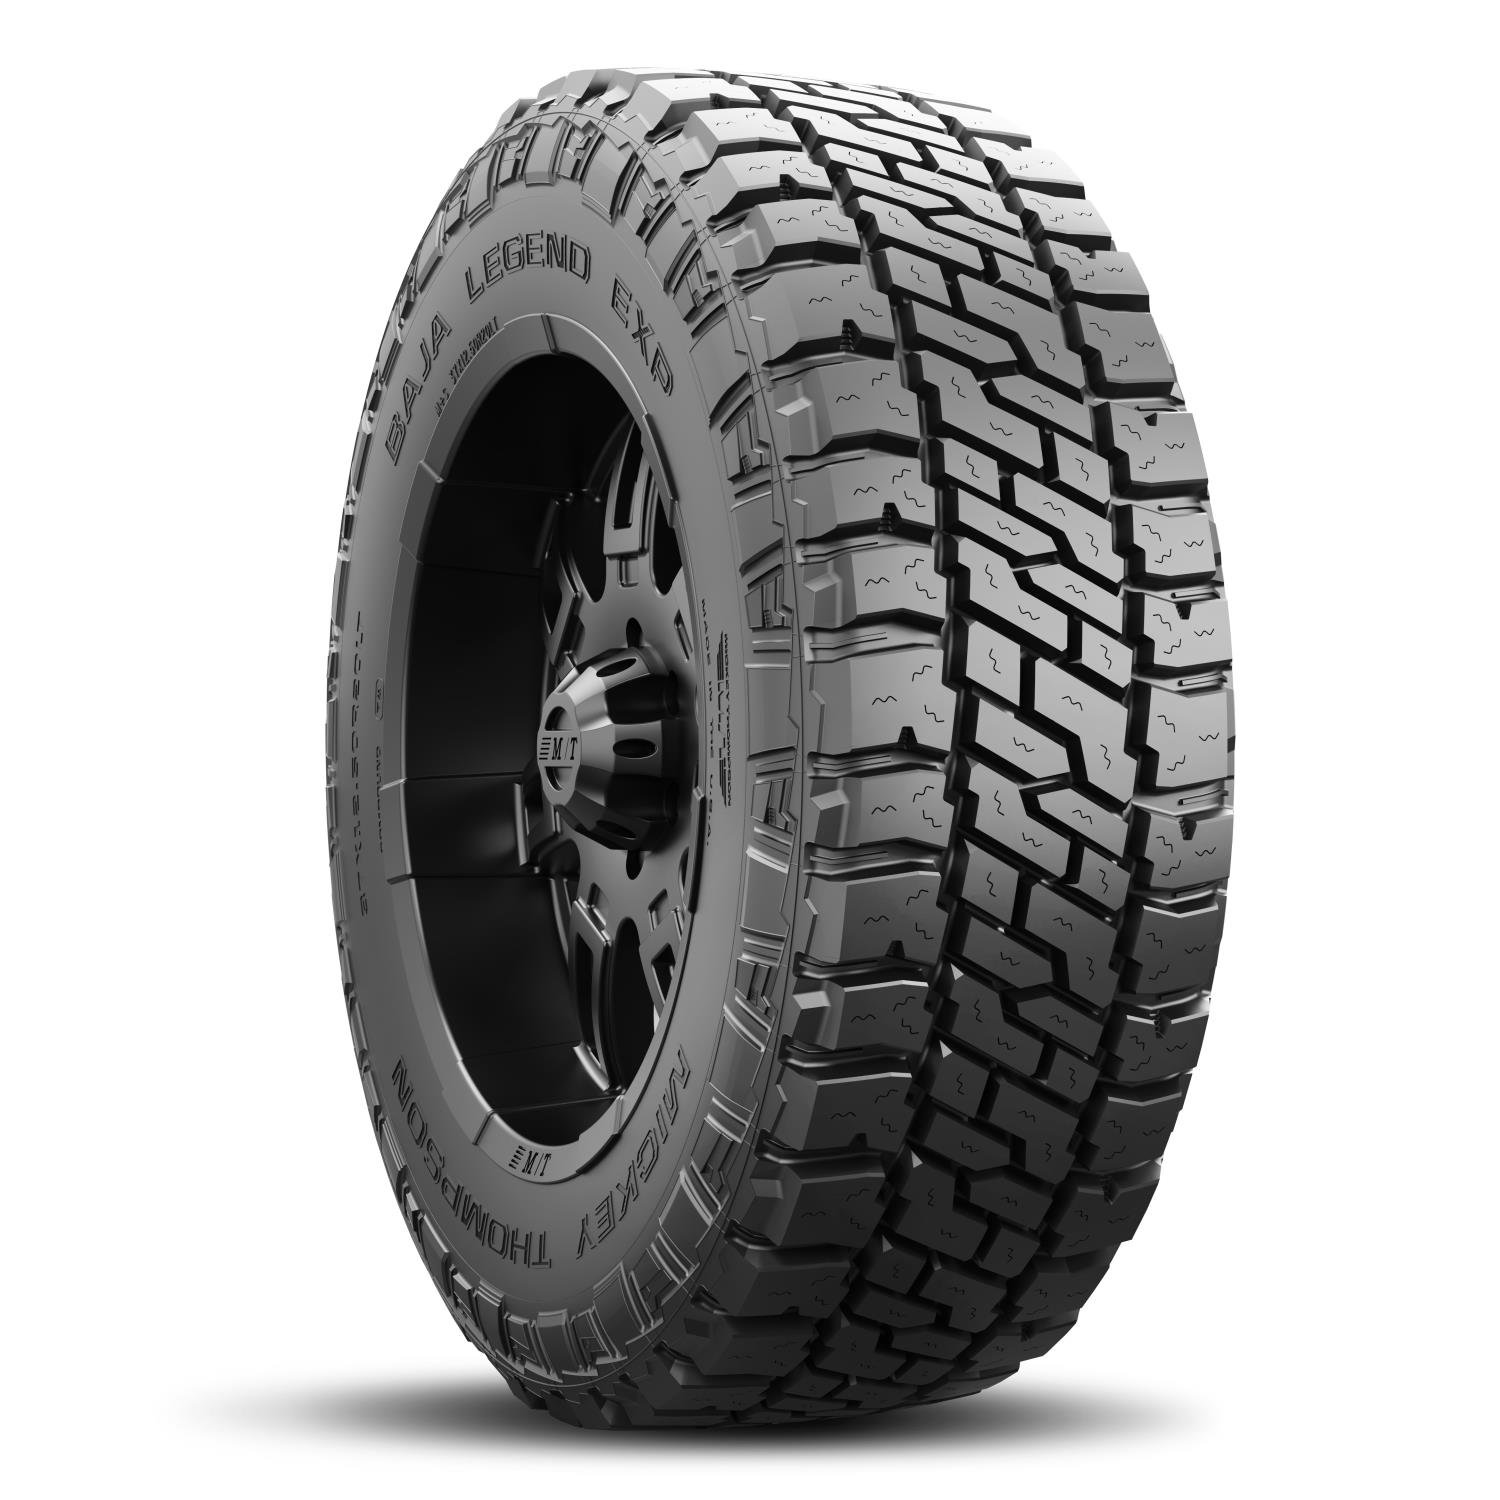 Baja Legend EXP Tire 33X12.50R20LT